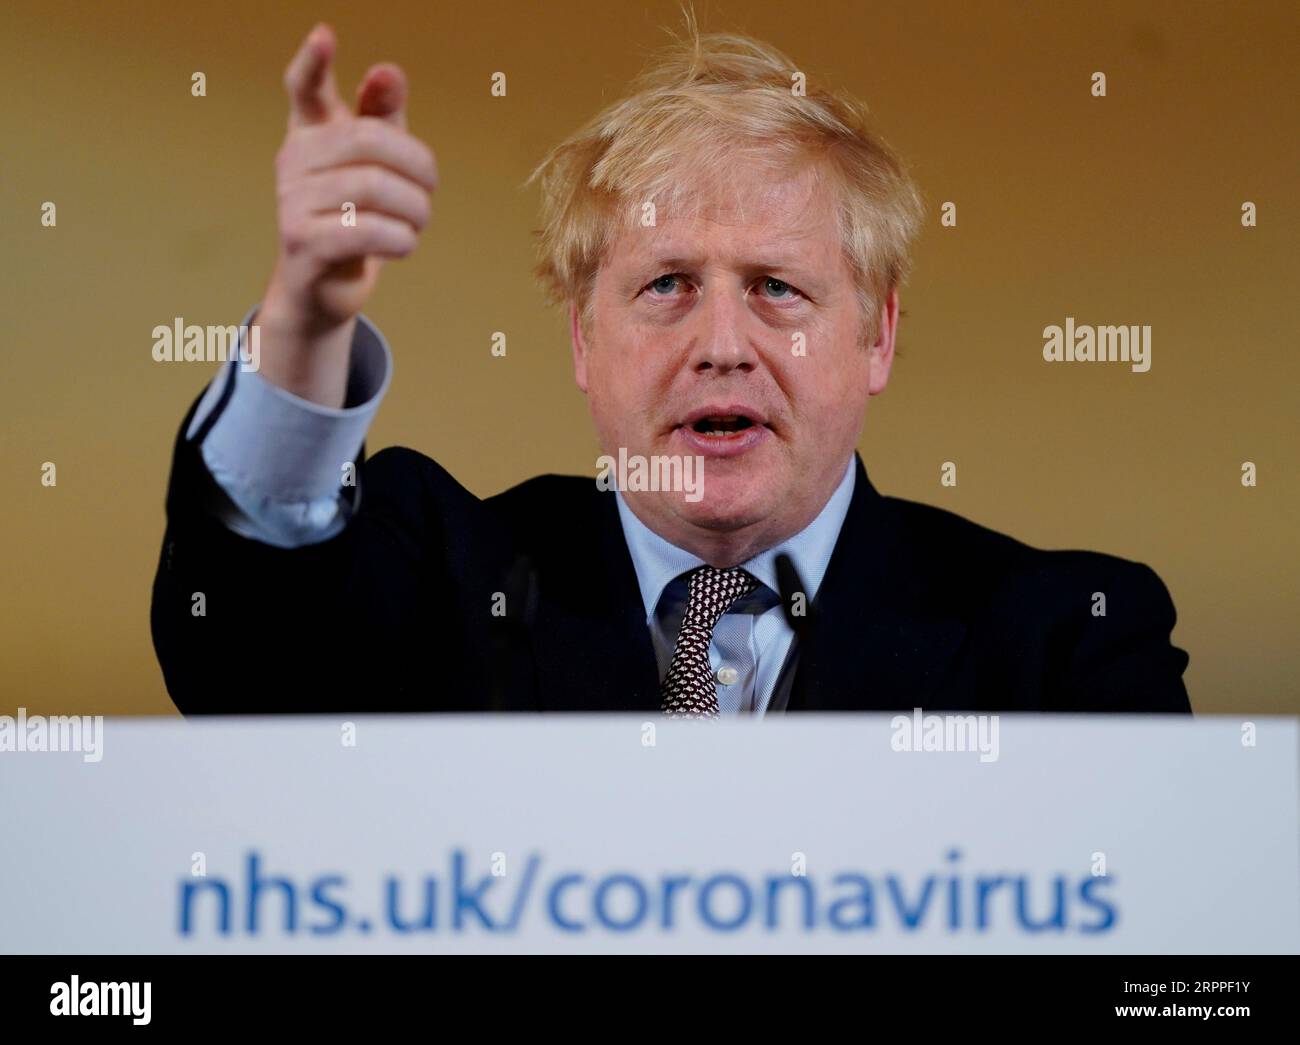 200316 -- LONDON, 16. März 2020 Xinhua -- der britische Premierminister Boris Johnson spricht auf einer Pressekonferenz in der 10 Downing Street in London, Großbritannien, am 16. März 2020. Der britische Premierminister Boris Johnson forderte am Montag die Menschen, insbesondere die Bewohner des am schwersten betroffenen Londons, auf, unwesentliche Kontakte zur Bekämpfung der Verbreitung des neuartigen Coronavirus zu vermeiden, das seiner Meinung nach sehr störend sei. Boris Johnson gab sein erstes tägliches, im Fernsehen übertragenes Update zum Coronavirus, nachdem er eine Sitzung des COBRA-Notfallausschusses geleitet hatte, um die laufende Reaktion der Regierung auf das Coronavirus zu koordinieren. Andrew Parsons/ Stockfoto